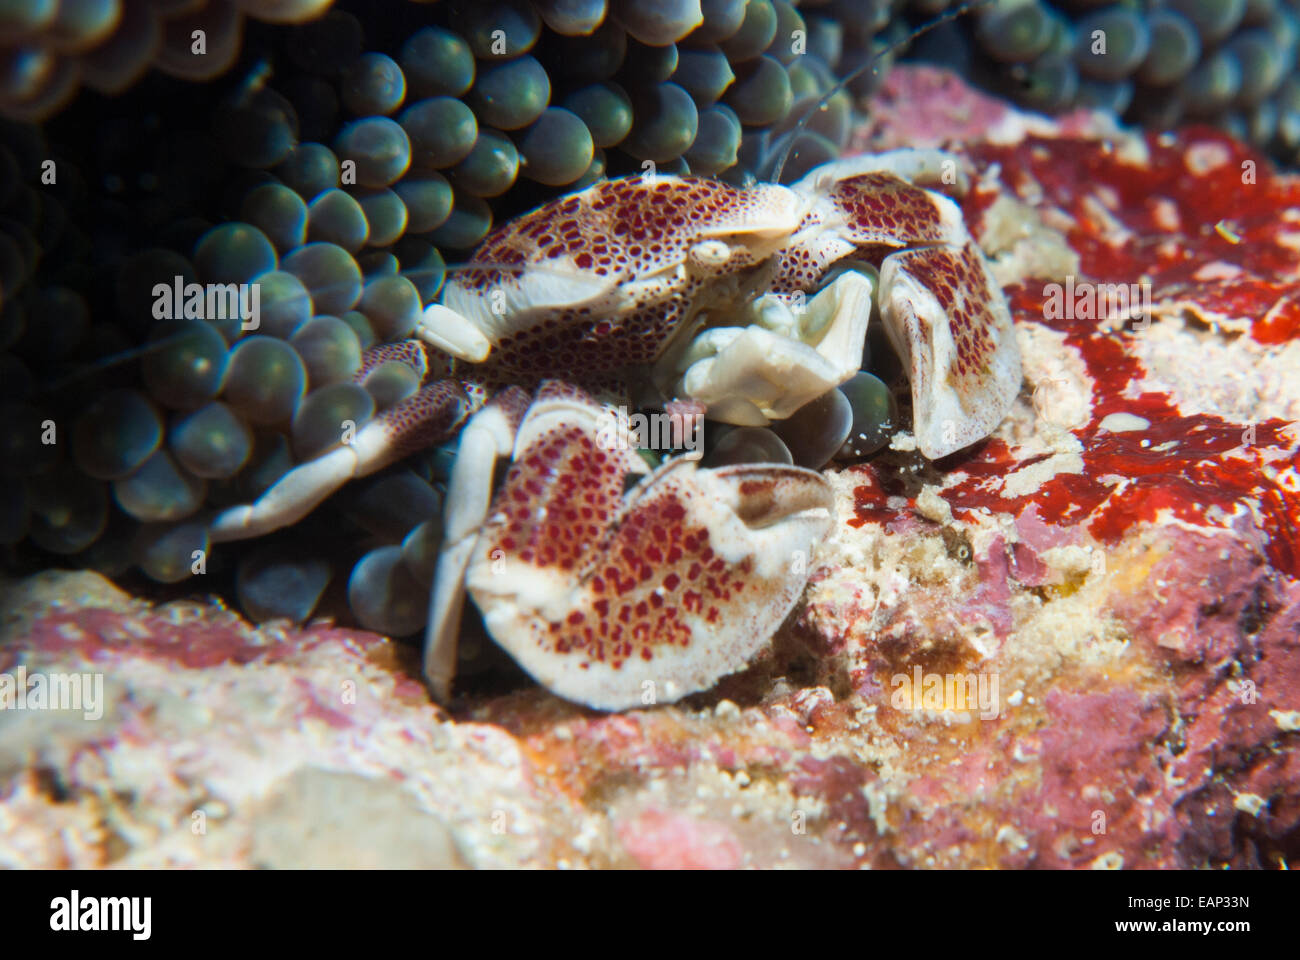 Anemone crab - Neopetrolisthes ohshimai - Moalboal - Cebu - Philippines Stock Photo